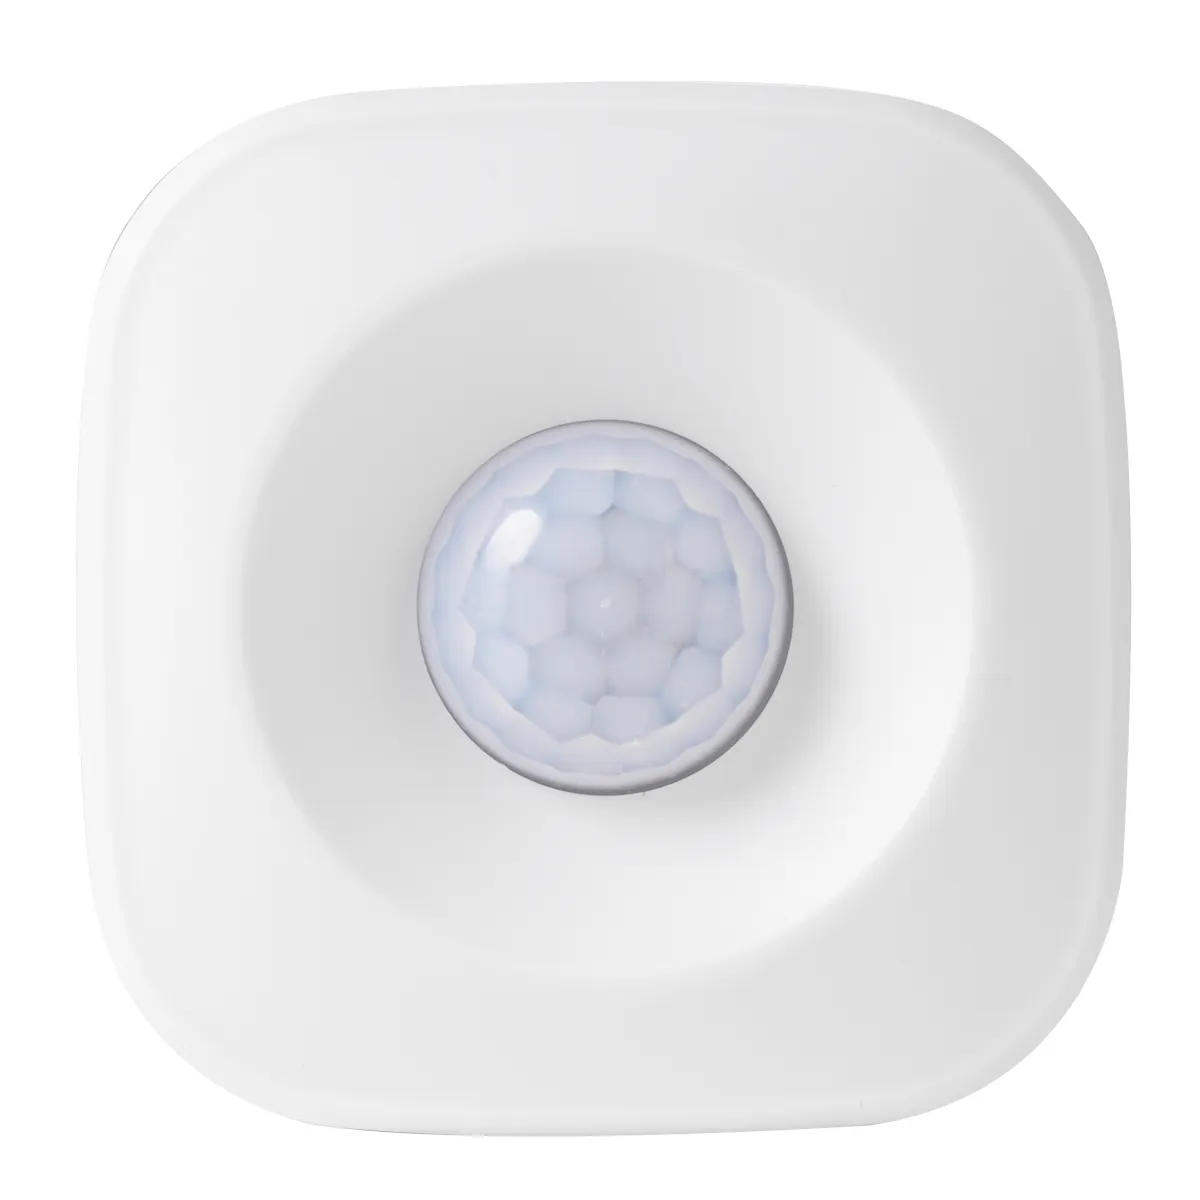 Tuya seguridad inteligente para el hogar Wifi Sensor de movimiento Pir Detector de movimiento Alarma inalámbrica Smart Life App Sensores